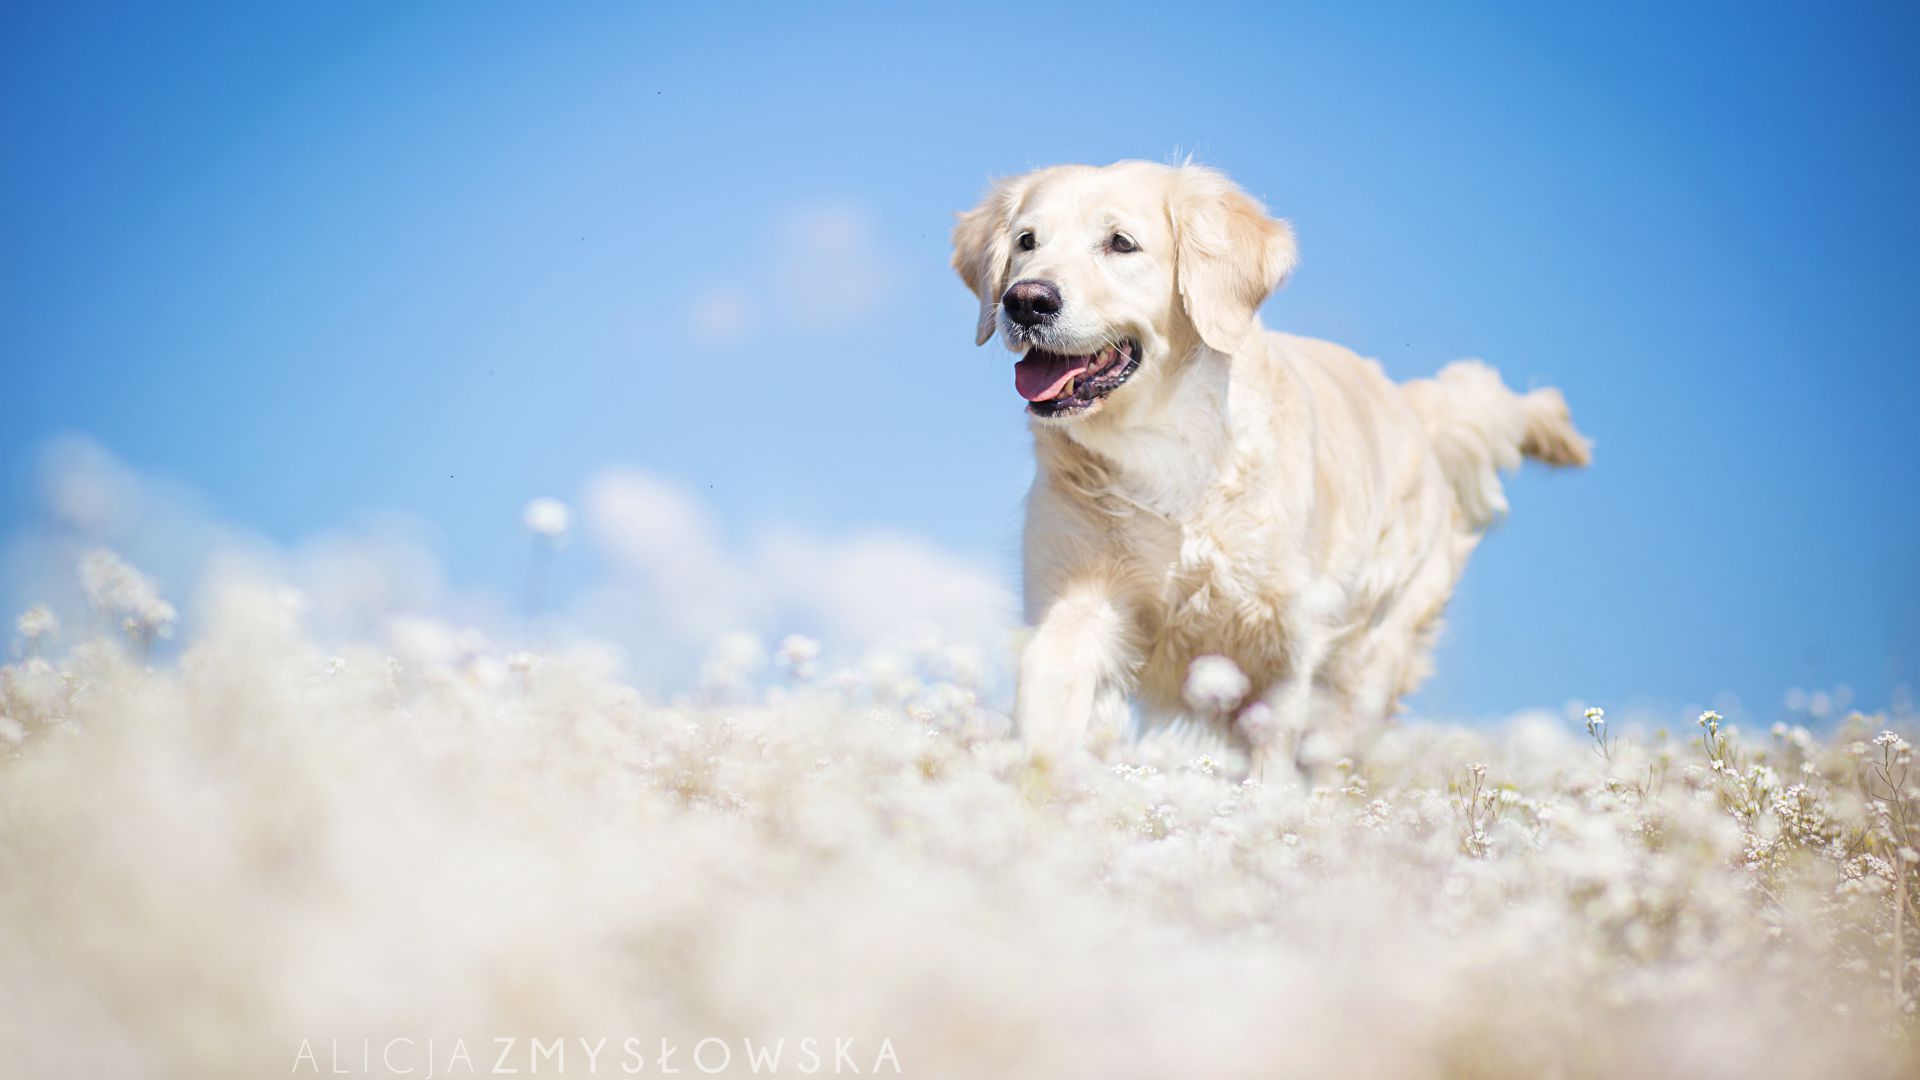 Лабрадор, собака, поле, милые животные, забавный, Labrador, dog, field, cute animals, funny (horizontal)